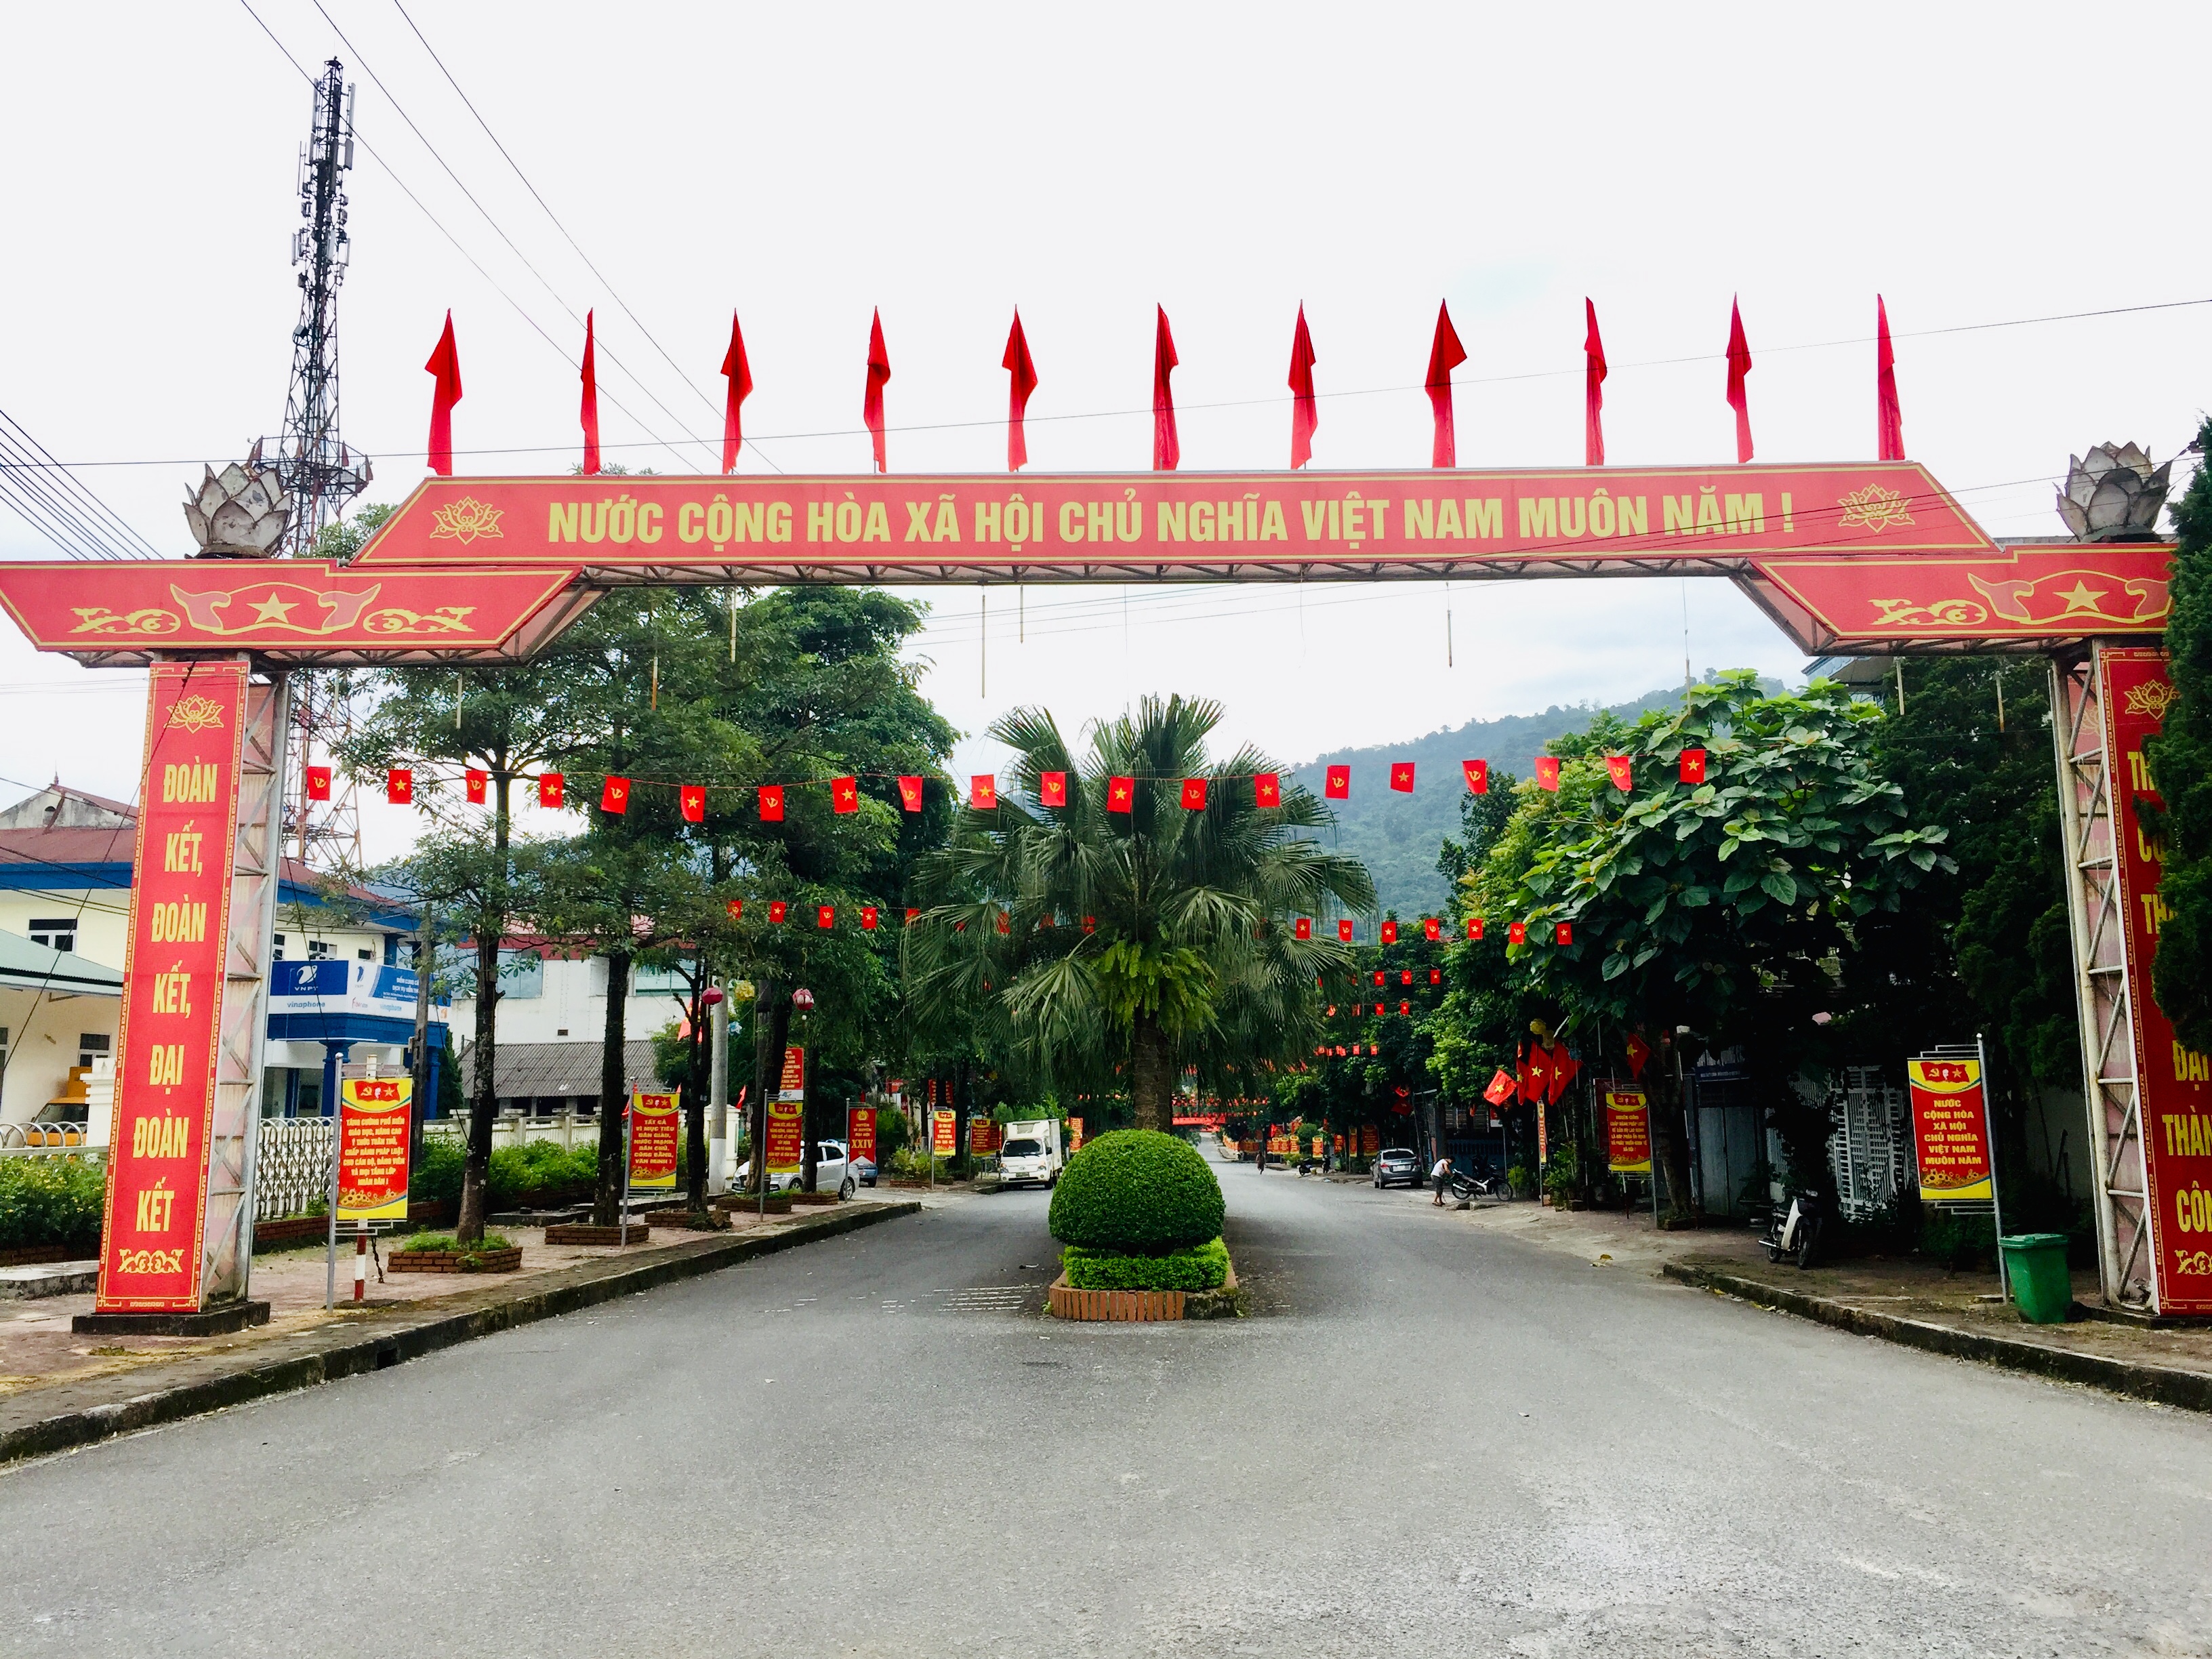 Vị Xuyên trang trí khánh tiết chào mừng Đại hội đại biểu Đảng bộ Tỉnh Hà Giang lần thứ XVII, nhiệm kỳ 2020 – 2025